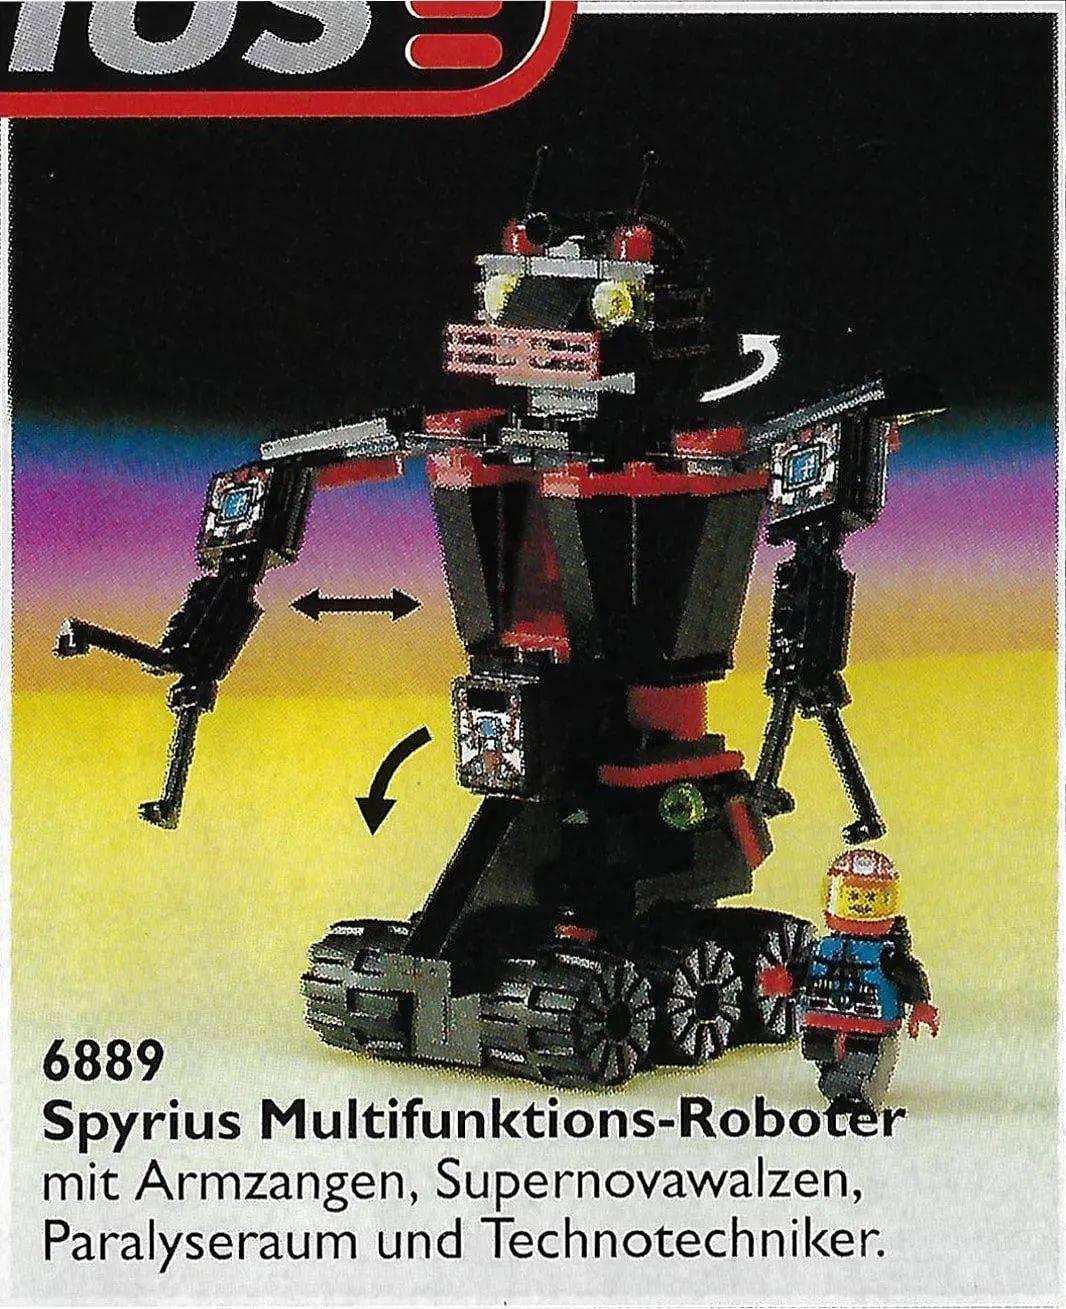 长文详尽剖析：乐高第一个电子游戏及首个虚拟拼搭程序—1995年《LEGO Fun To Build》 -1